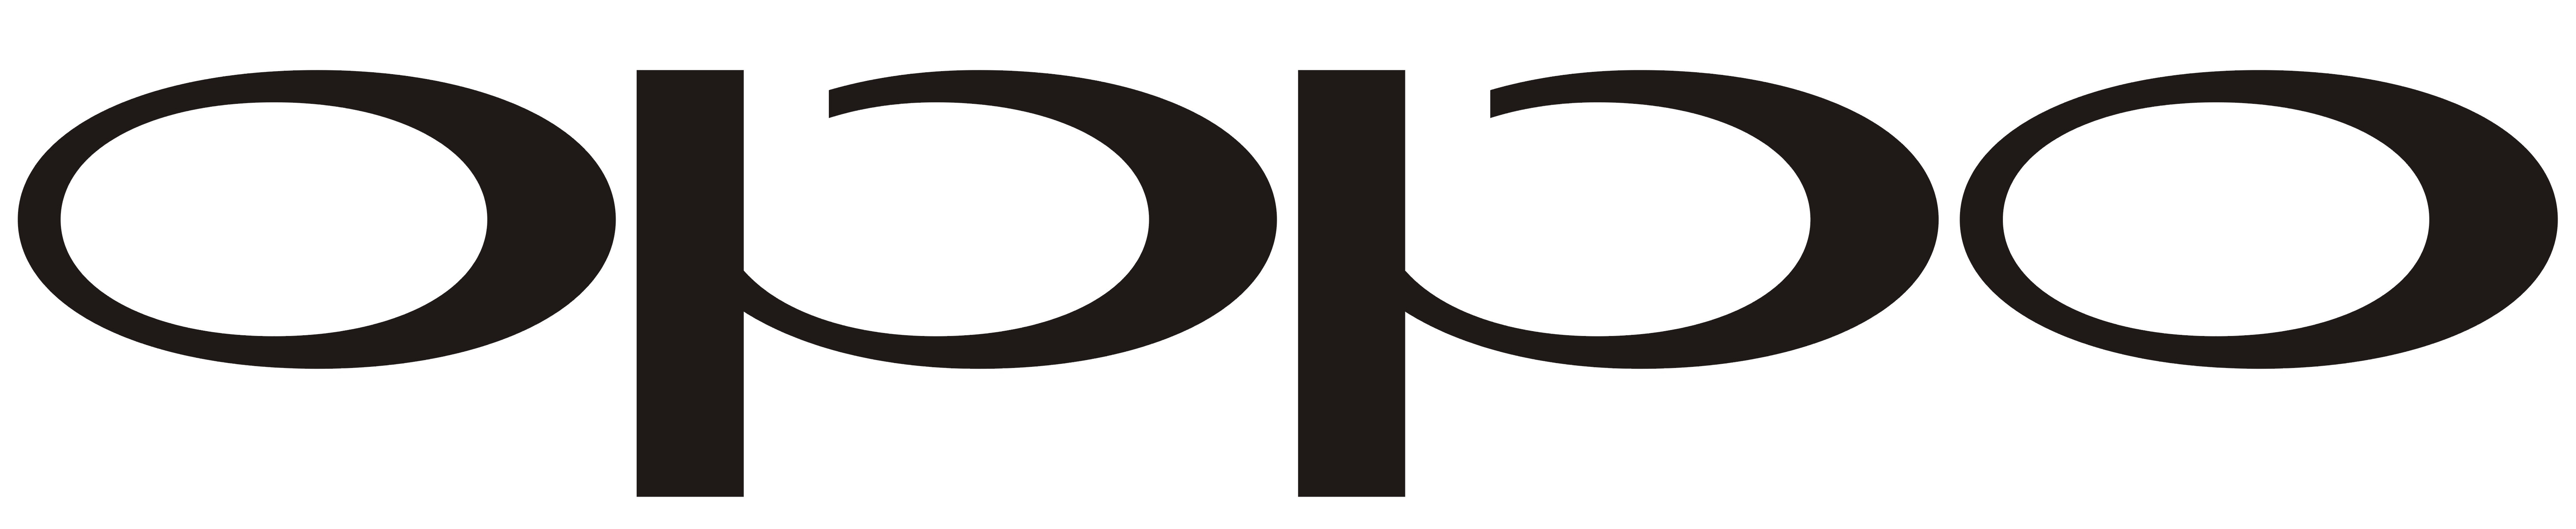 Oppo Logo photo - 1